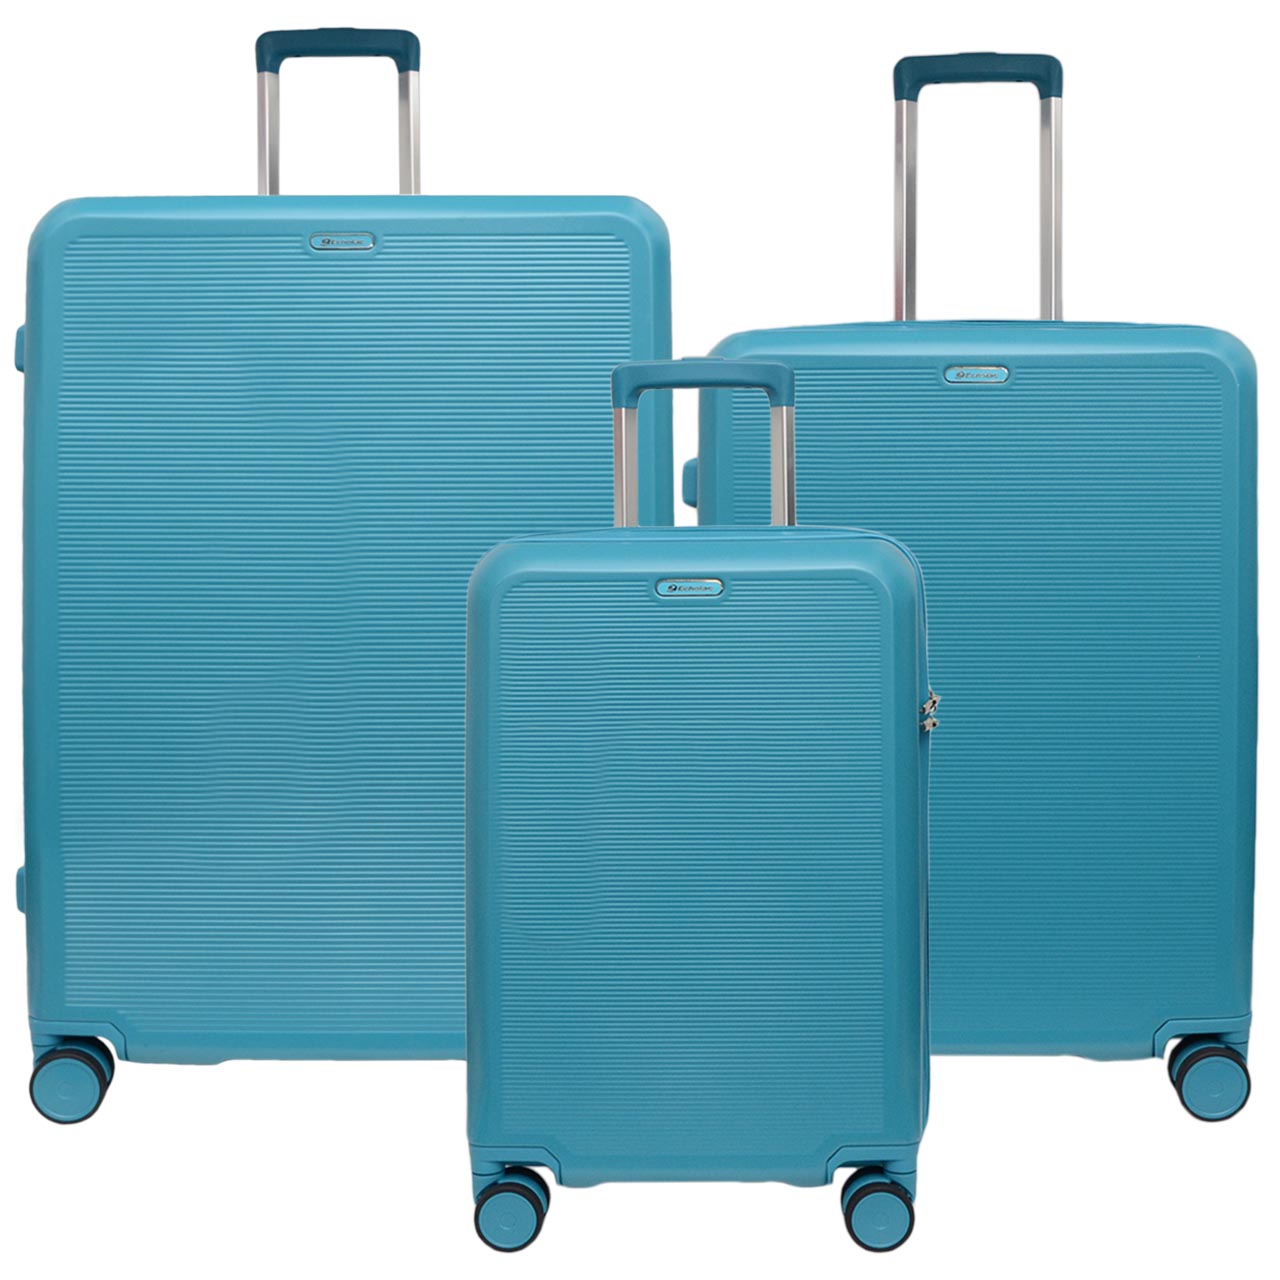 مجموعه سه عددی چمدان اکولاک مدل 2218 PCT